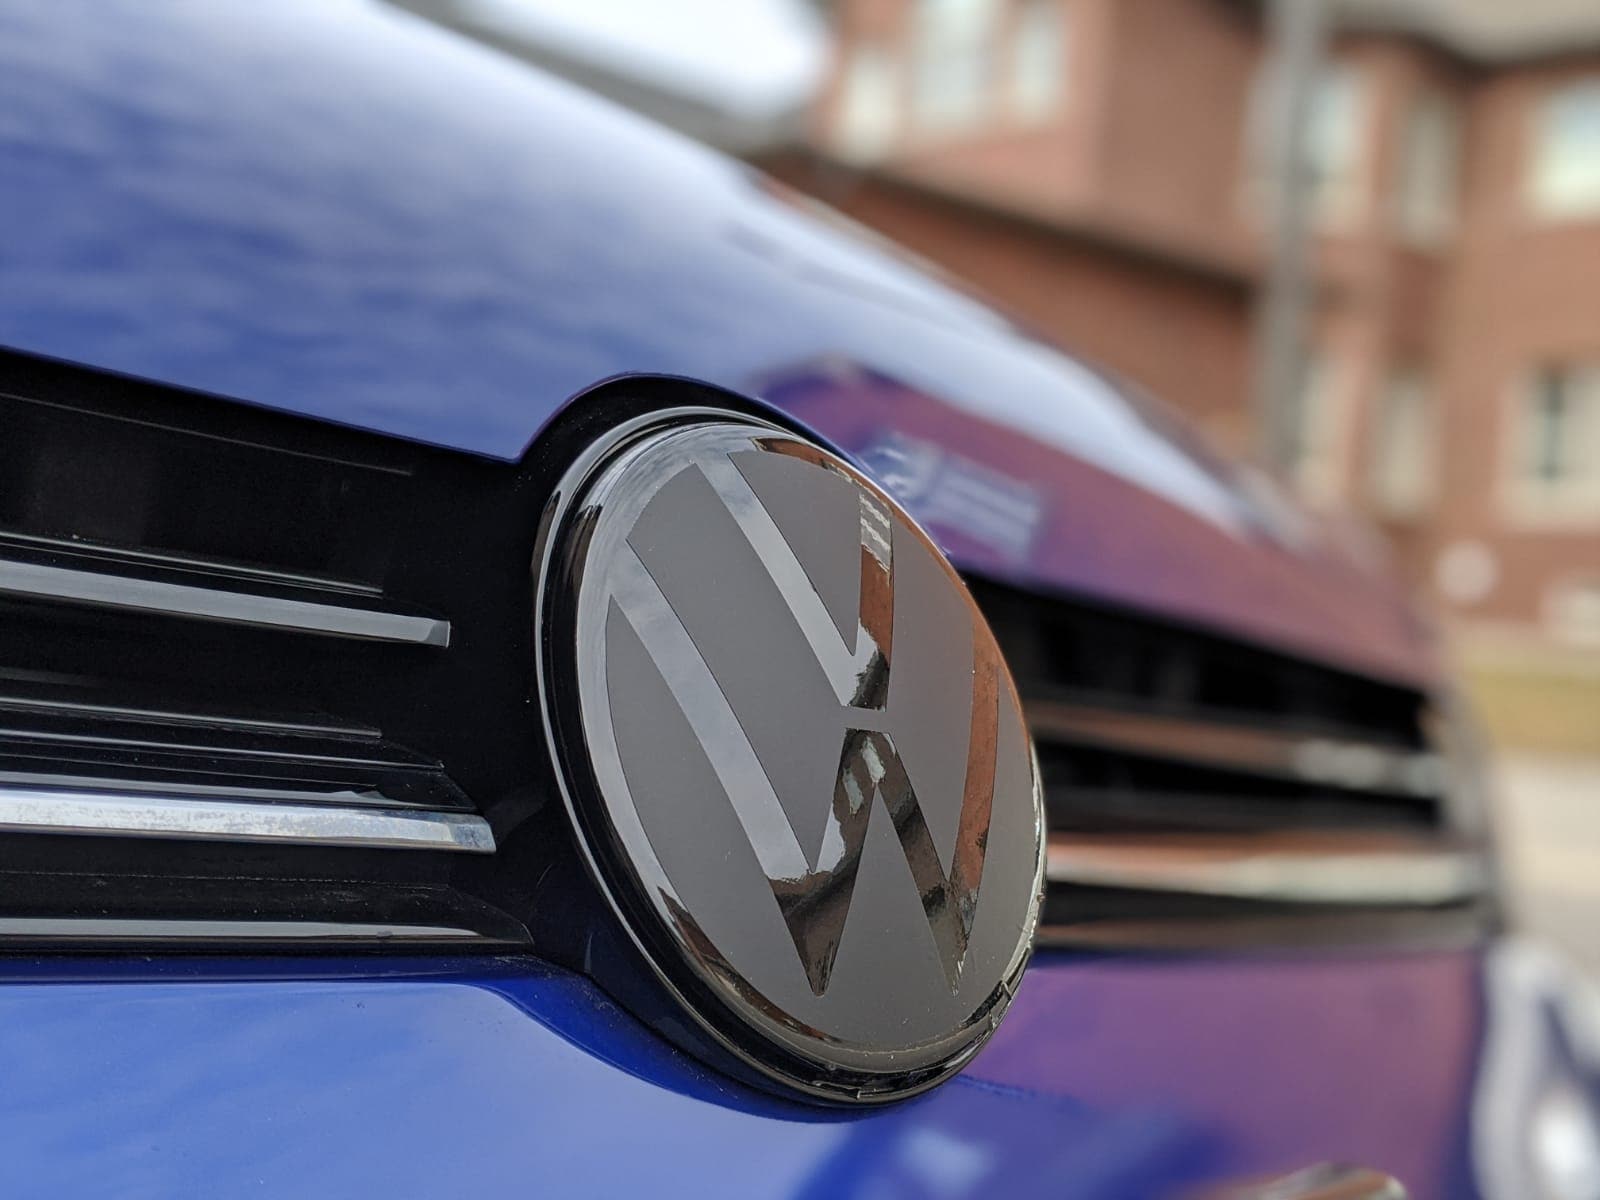 Facelift VW Emblem Zeichen folieren (Front) ACC • Golf 7 GTI Community •  Forum